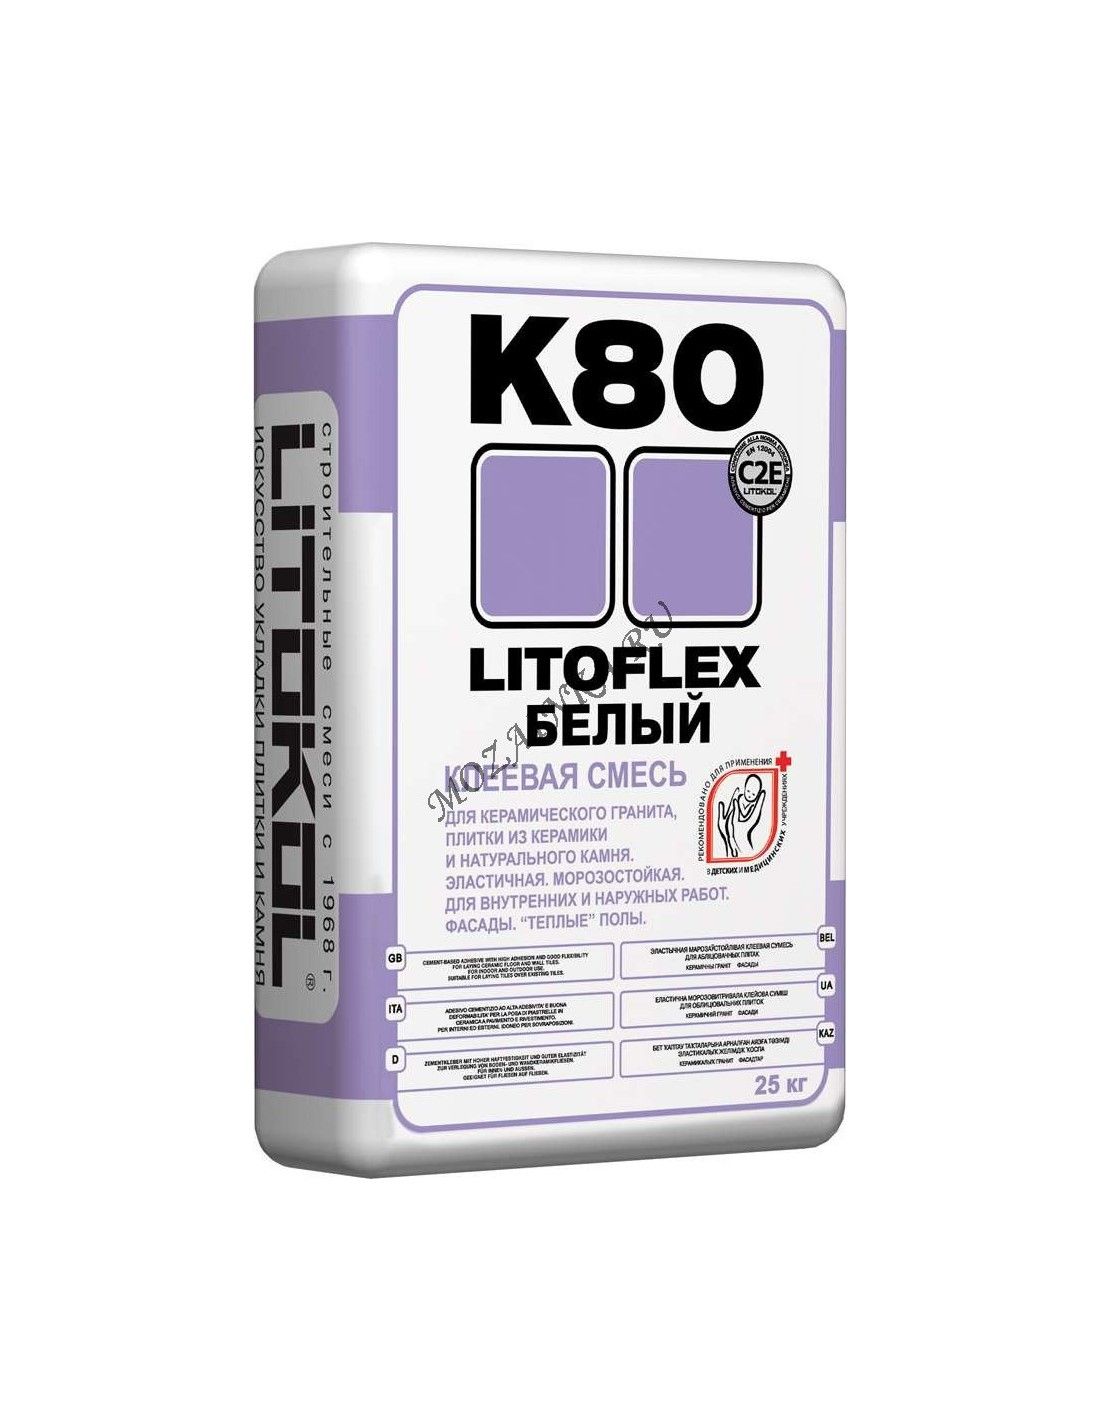 Купить клей литокол. Litokol LITOFLEX k80. Клеевая смесь LITOFLEX k80. Клей Литокол к-80. Клей для плитки Литокол к80.